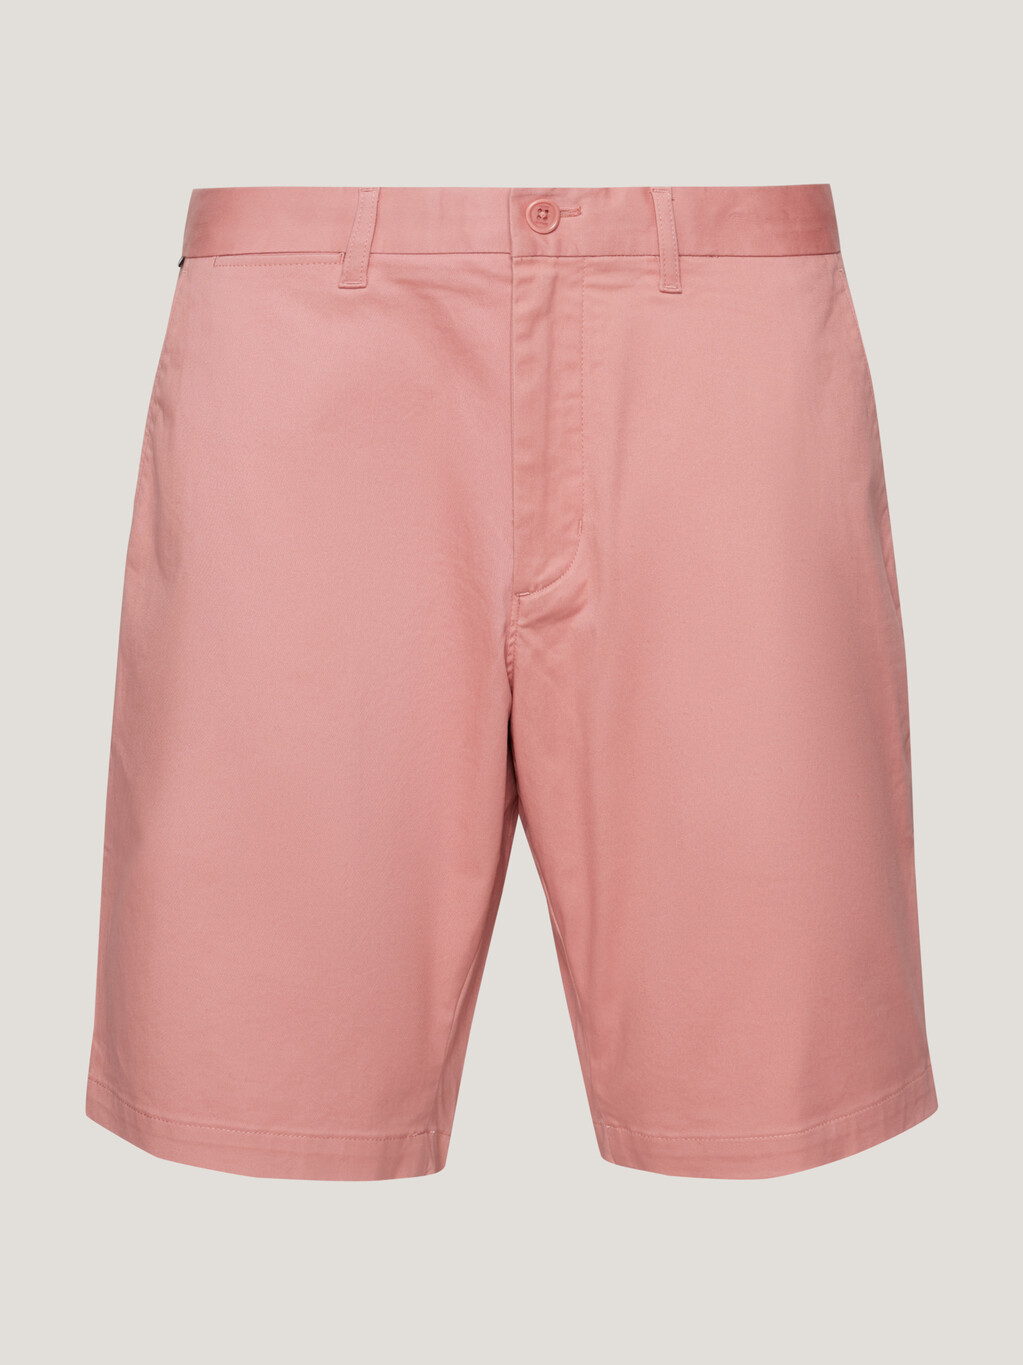 1985系列harlem 短褲, Teaberry Blossom, hi-res